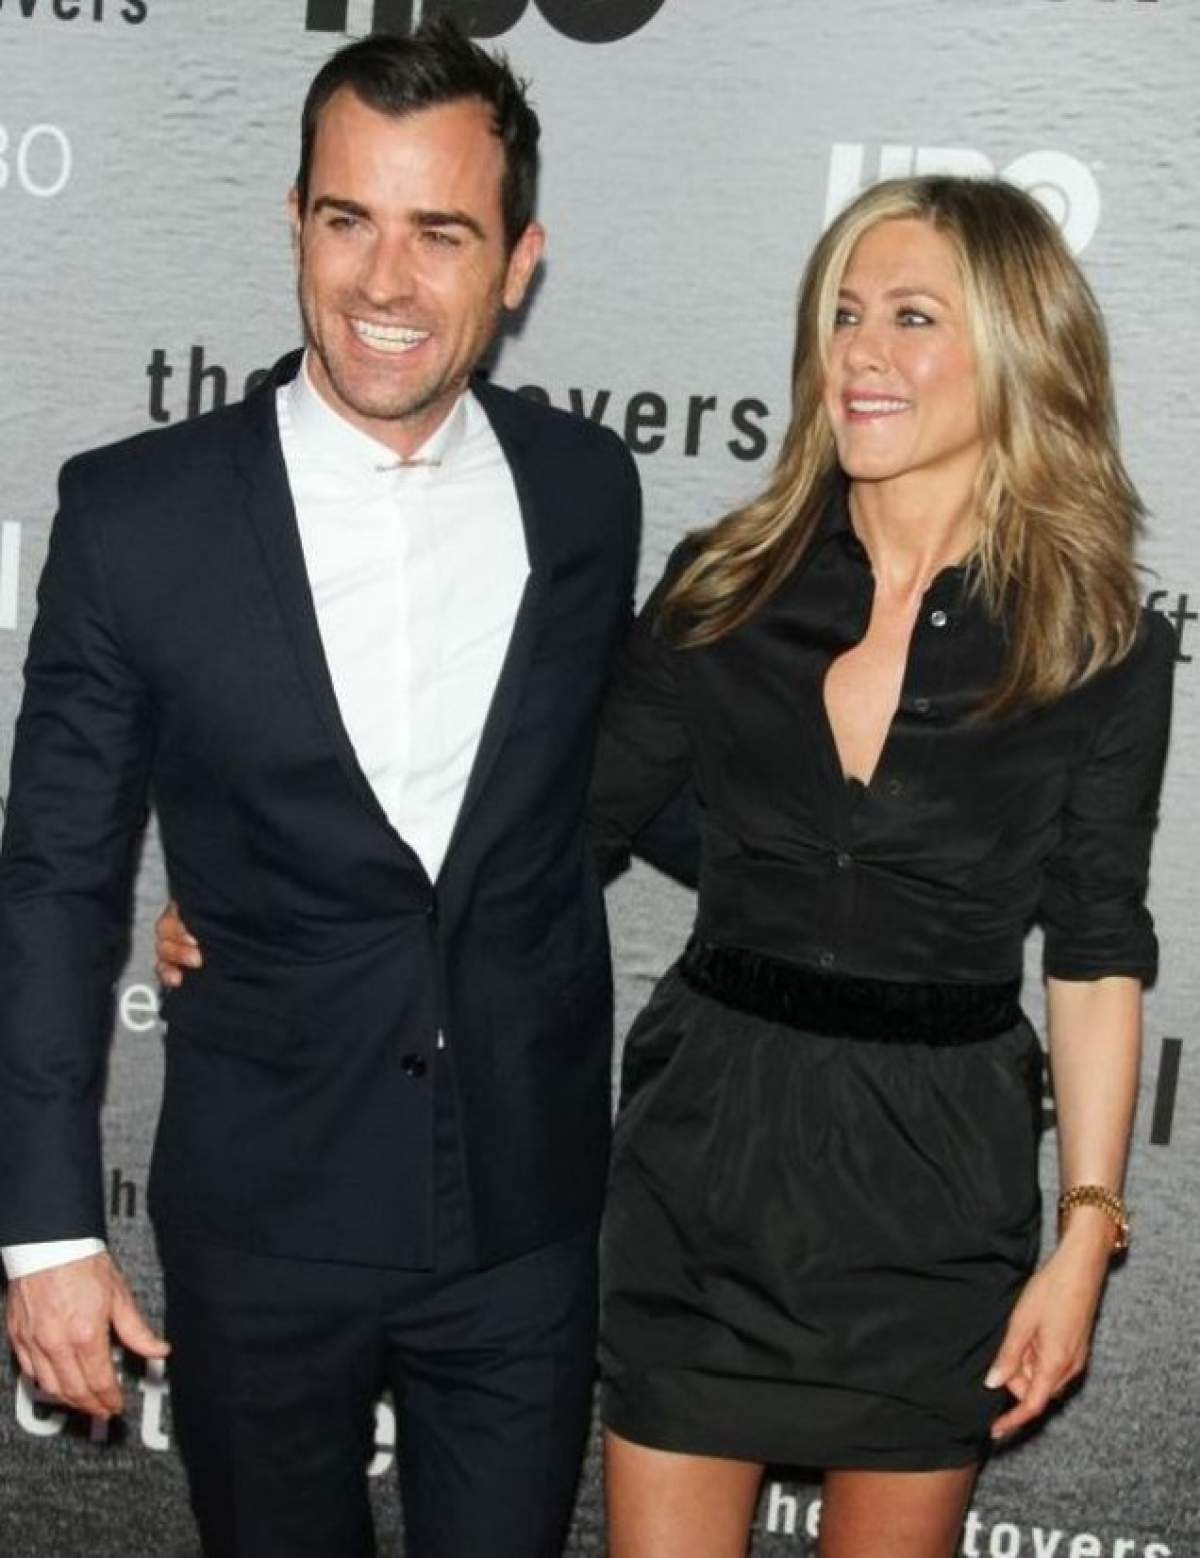 Veste extraodinară pentru Jennifer Aniston şi Justin Theroux! Cei doi vor deveni părinţi